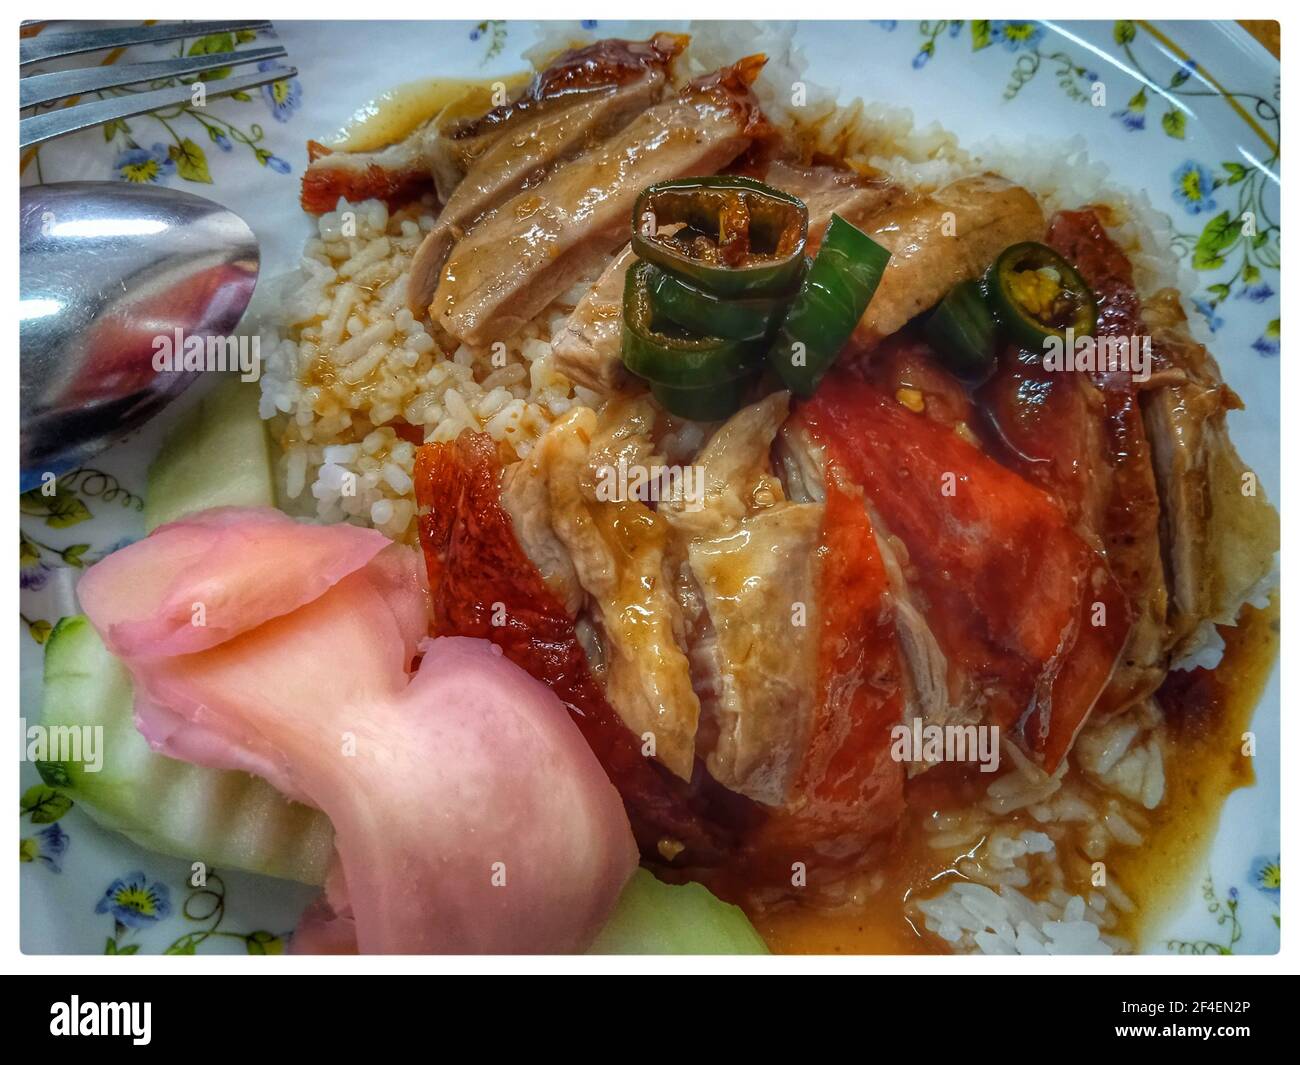 Deliciosa variedad de fotos de comida tailandesa Foto de stock